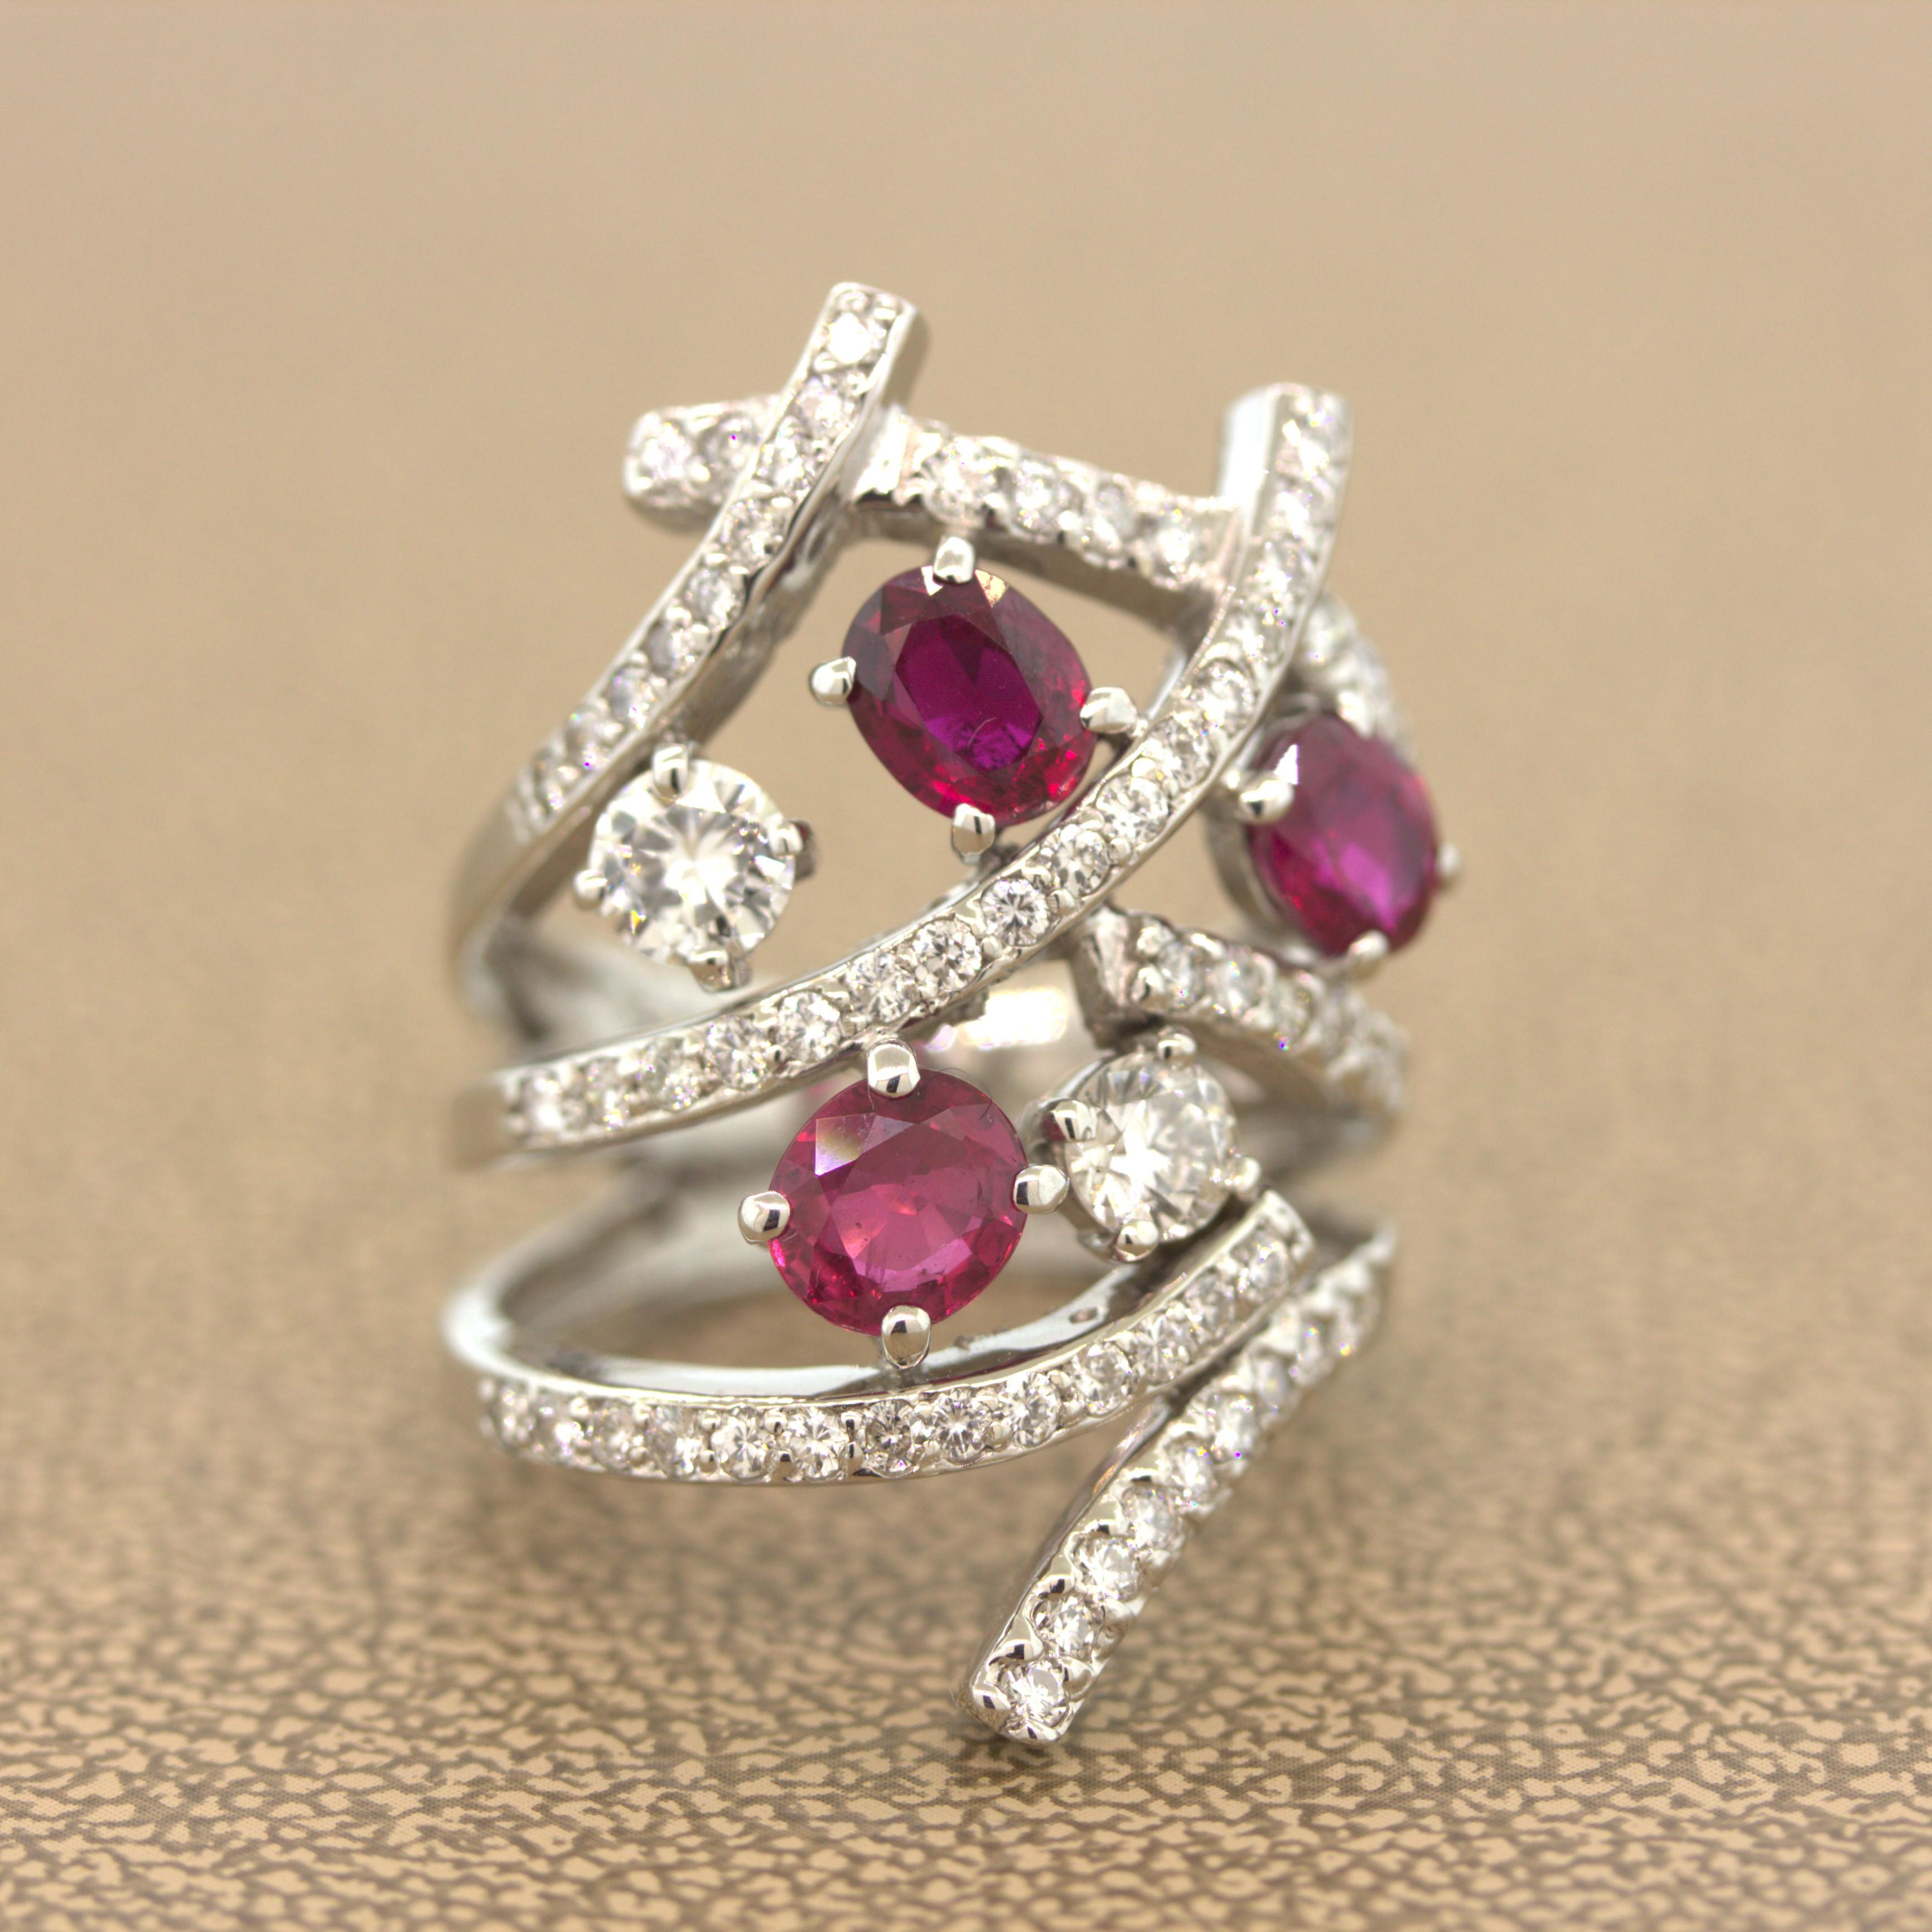 Cette bague est une version moderne de la bague à anneaux classique. Elle comporte trois rubis ovales d'un rouge vif pesant au total 2,21 carats. Ils sont d'une couleur et d'une clarté excellentes et sont rehaussés par une cascade de diamants, dont